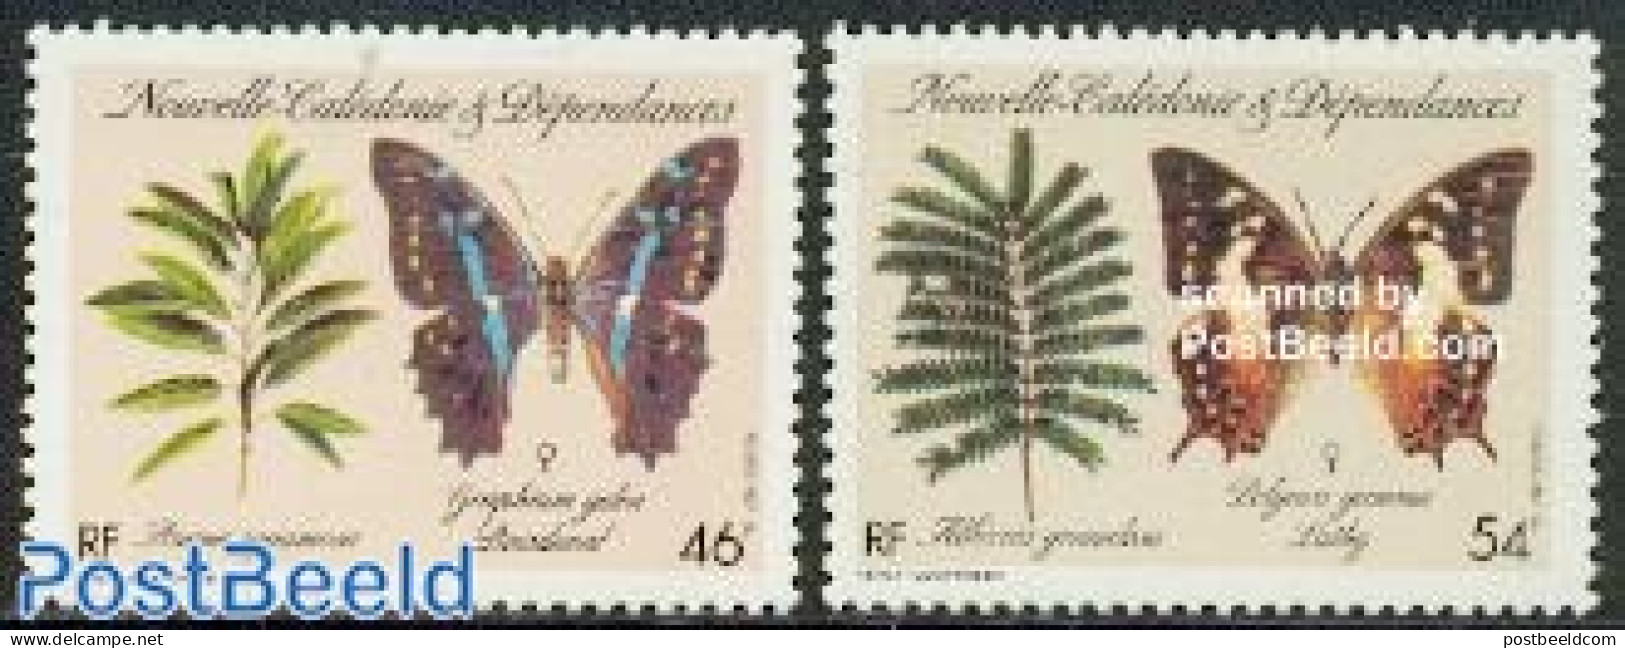 New Caledonia 1987 Butterflies 2v, Mint NH, Nature - Butterflies - Neufs